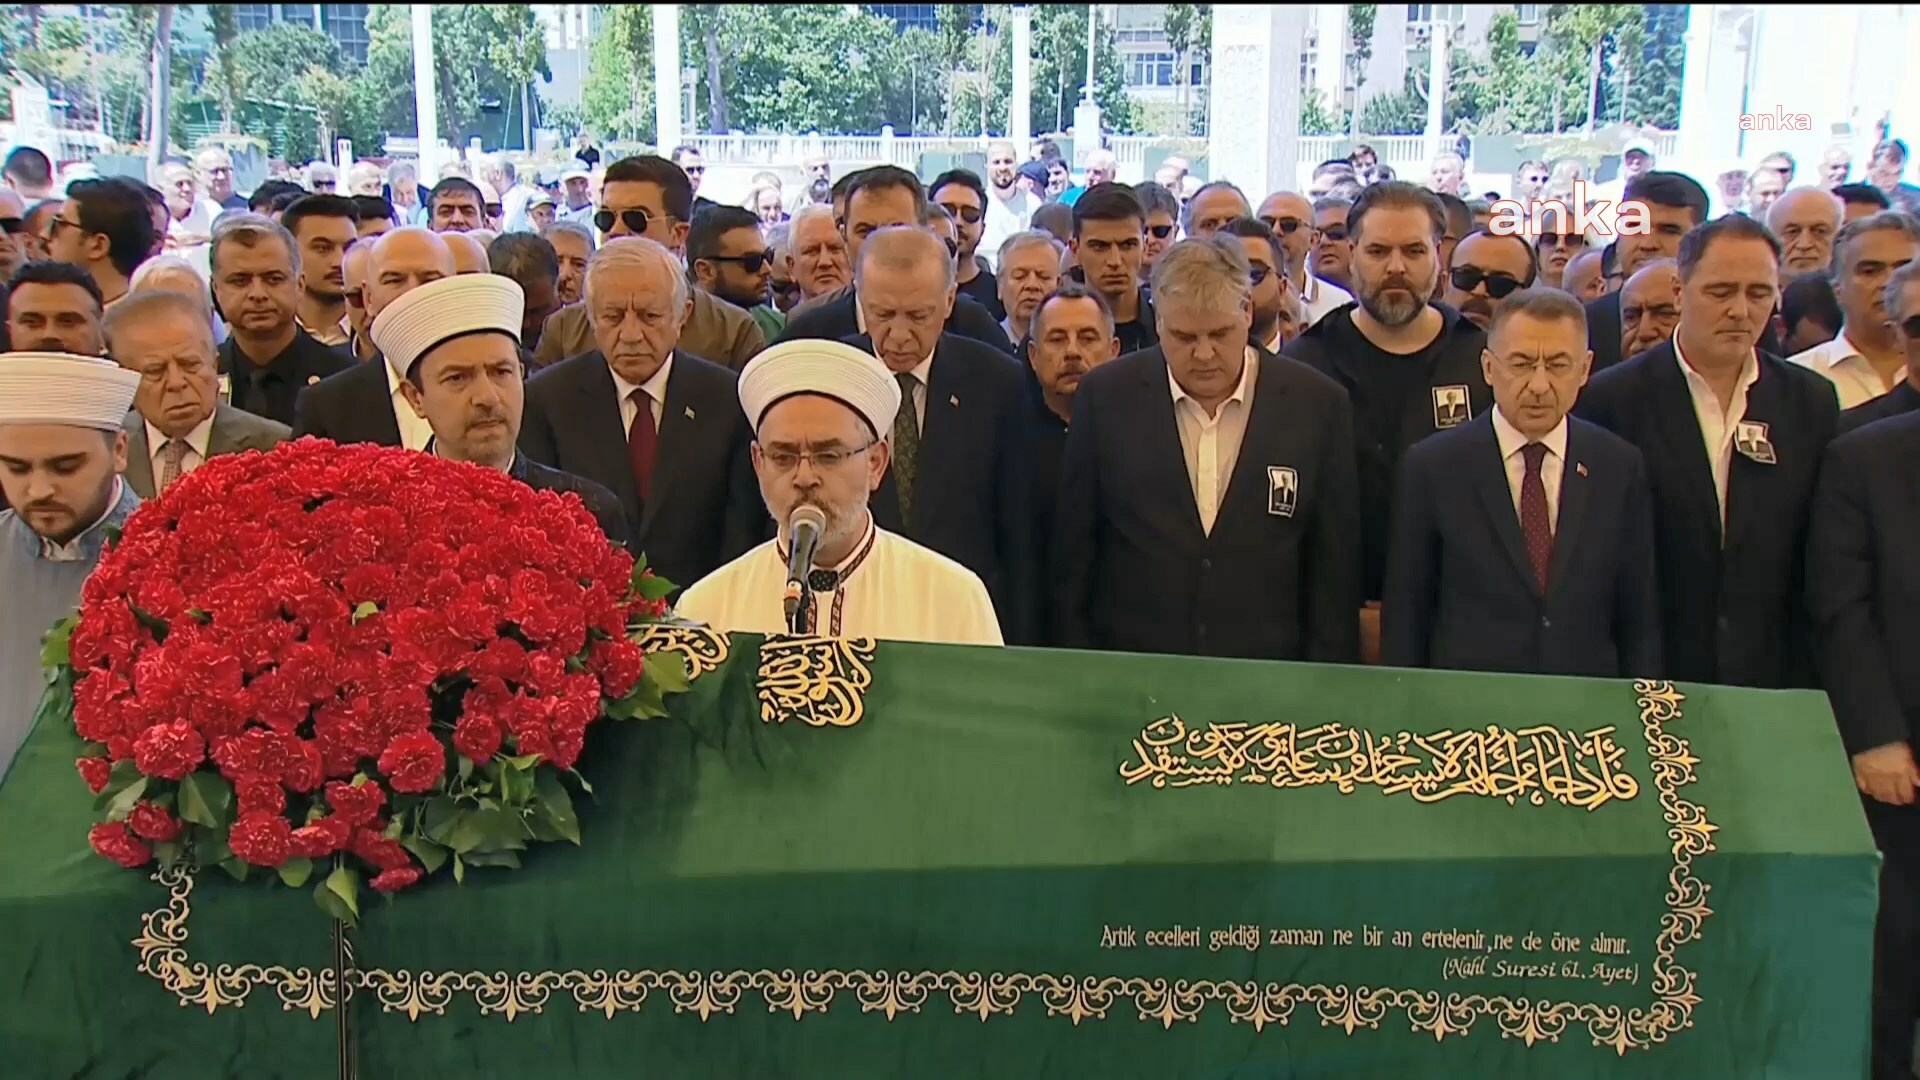 Özer Uçuran Çiller için cenaze töreni düzenlendi: Erdoğan da katıldı